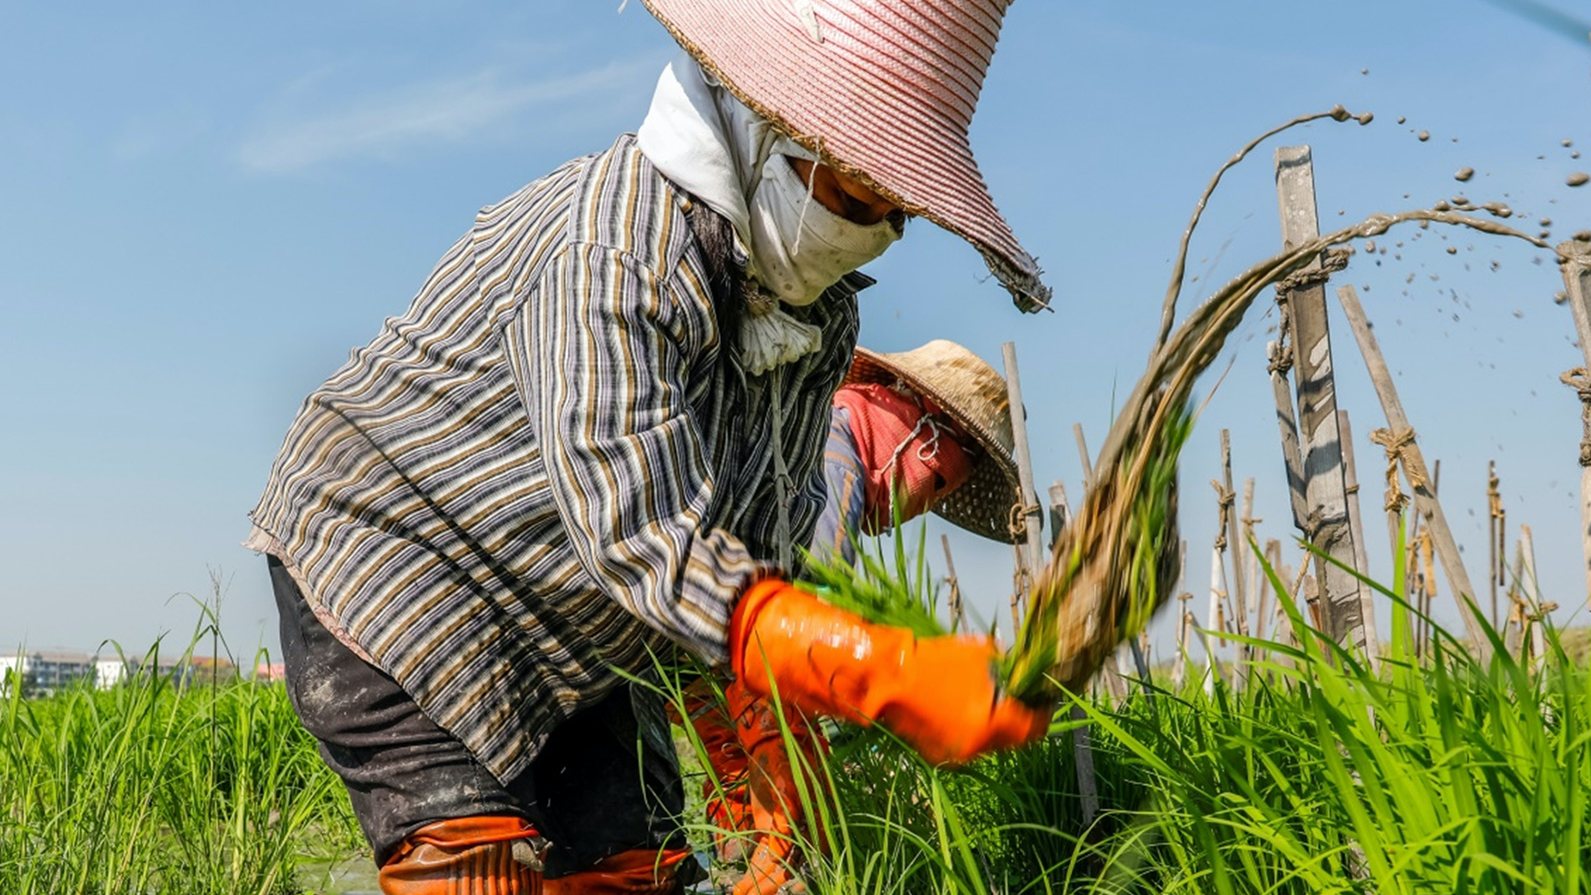 Thái Lan khuyến cáo nông dân chỉ nên canh tác một vụ lúa năm nay